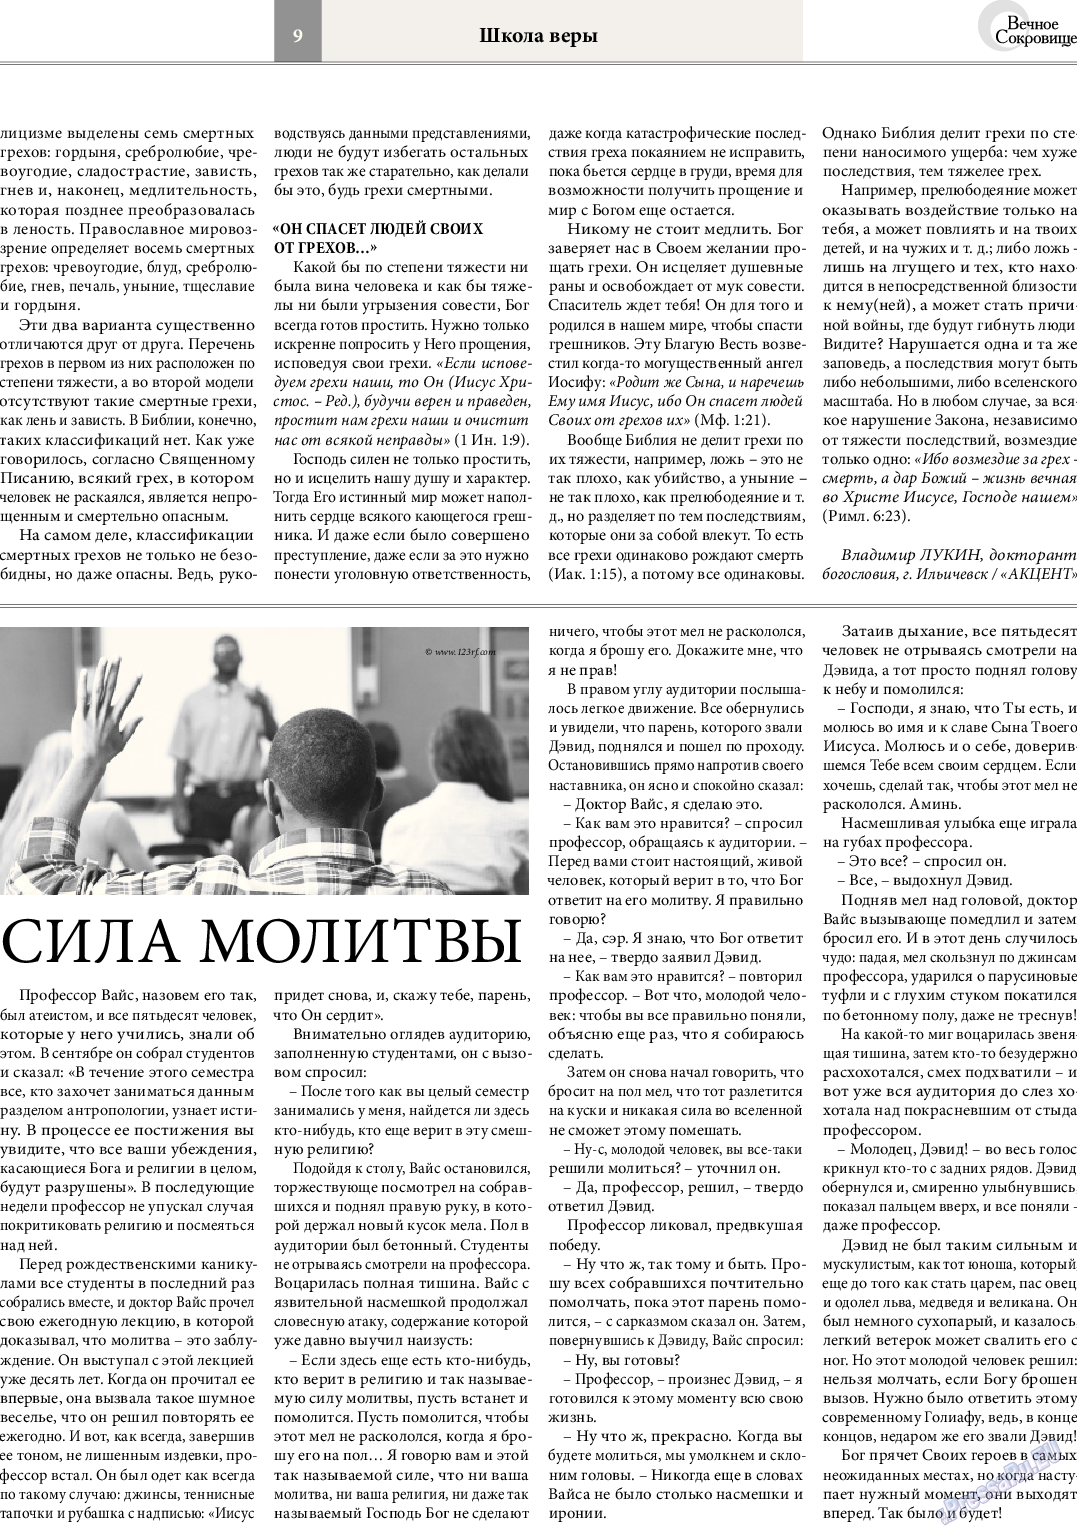 Вечное сокровище, газета. 2014 №3 стр.9